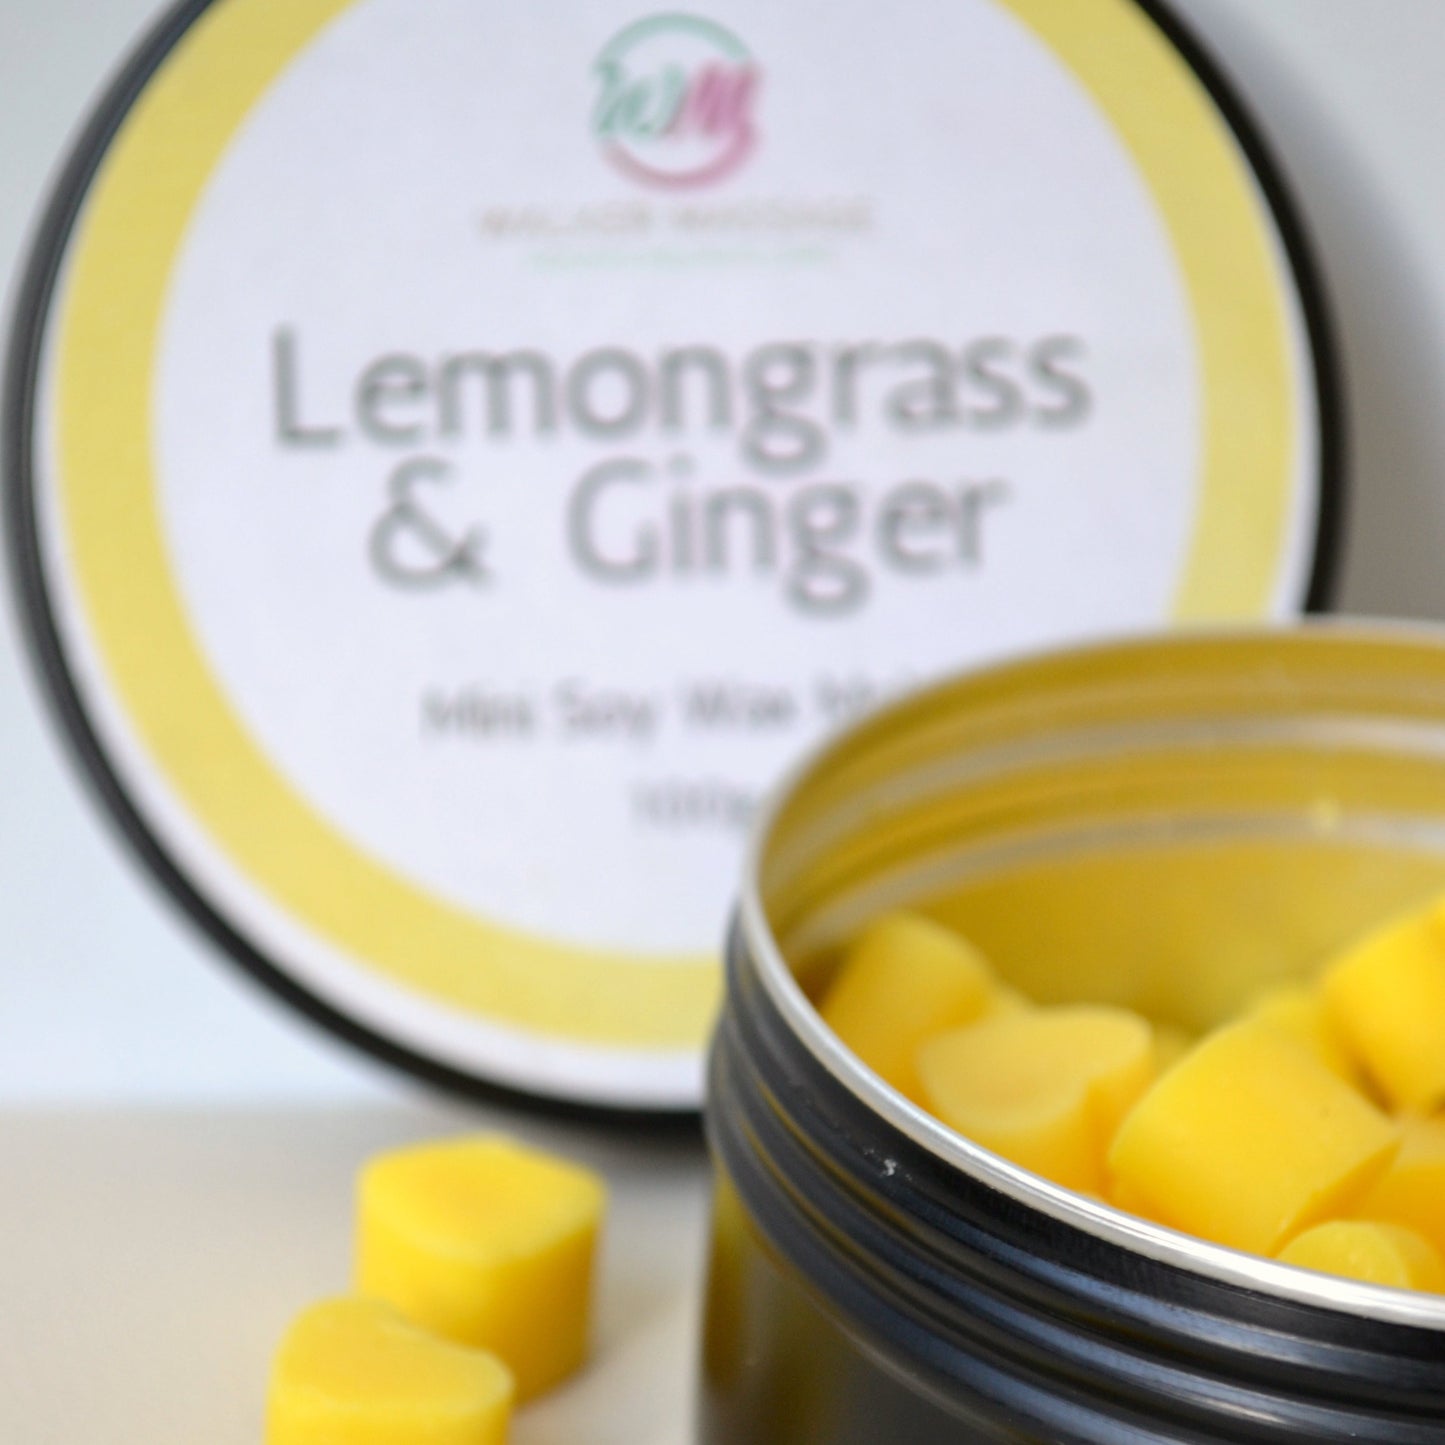 Lemongrass & Ginger Wax Melt Hearts Tin - 100g